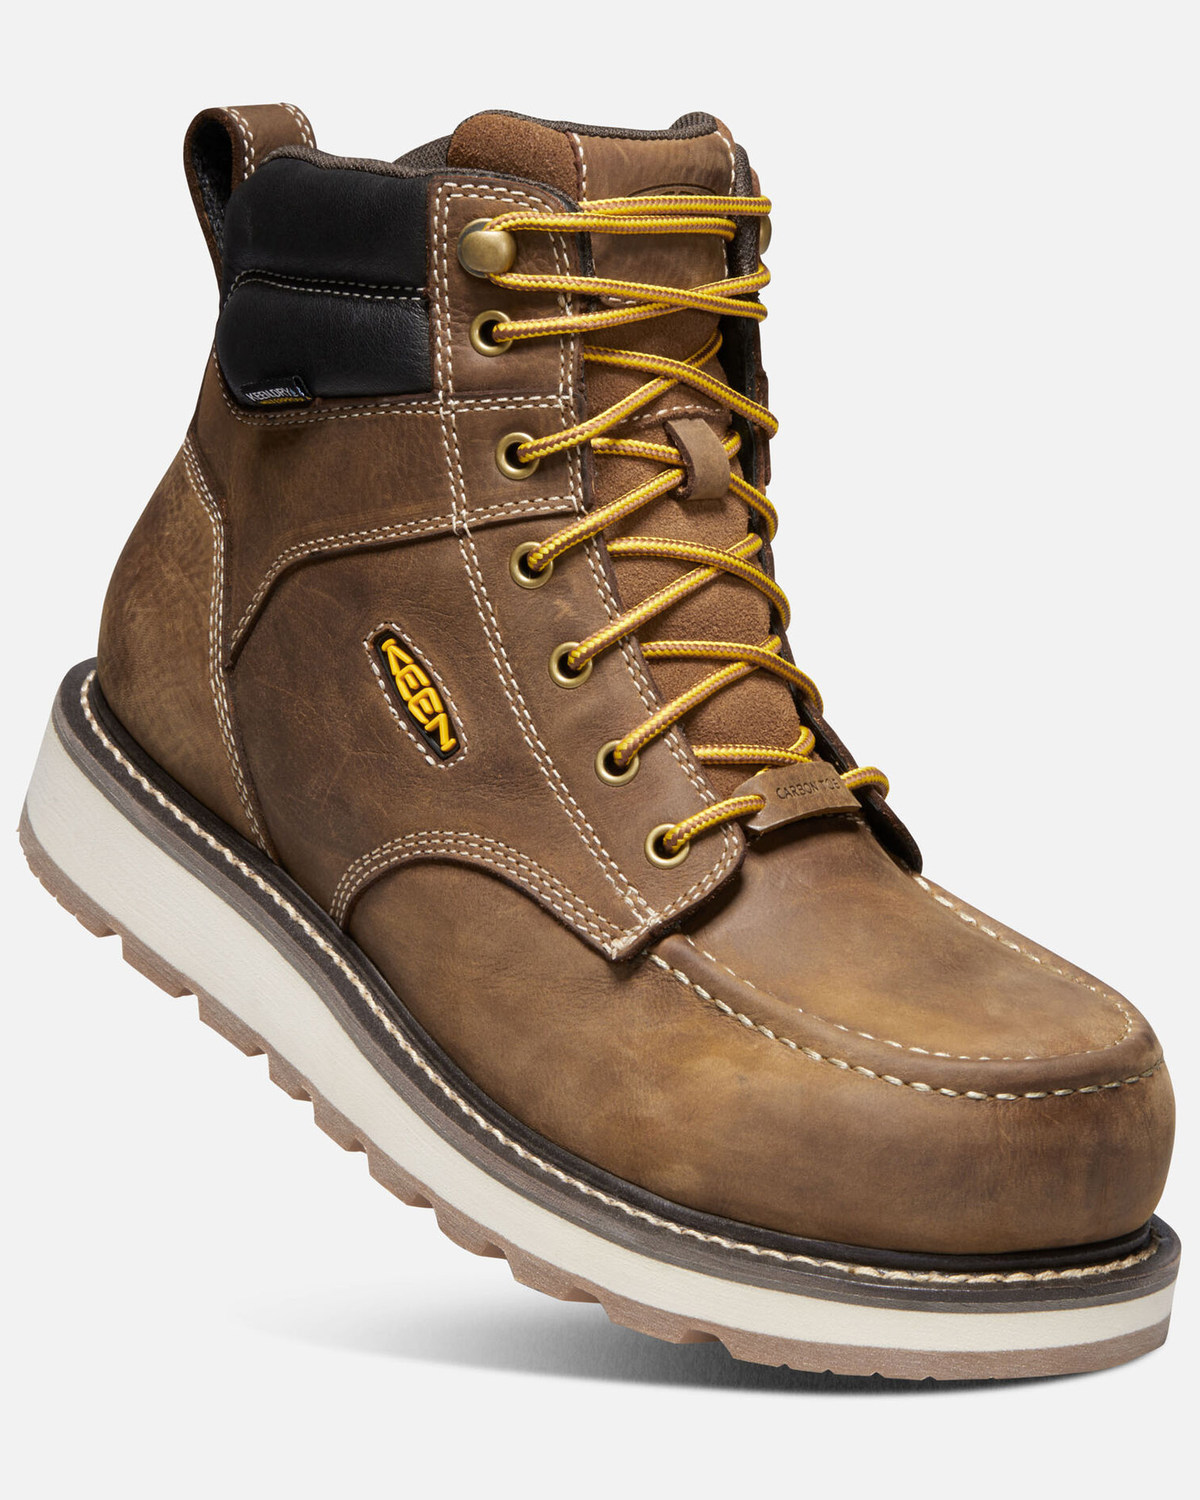 Keen Men's Cincinnati 6" Waterproof Work Boots - Carbon Toe